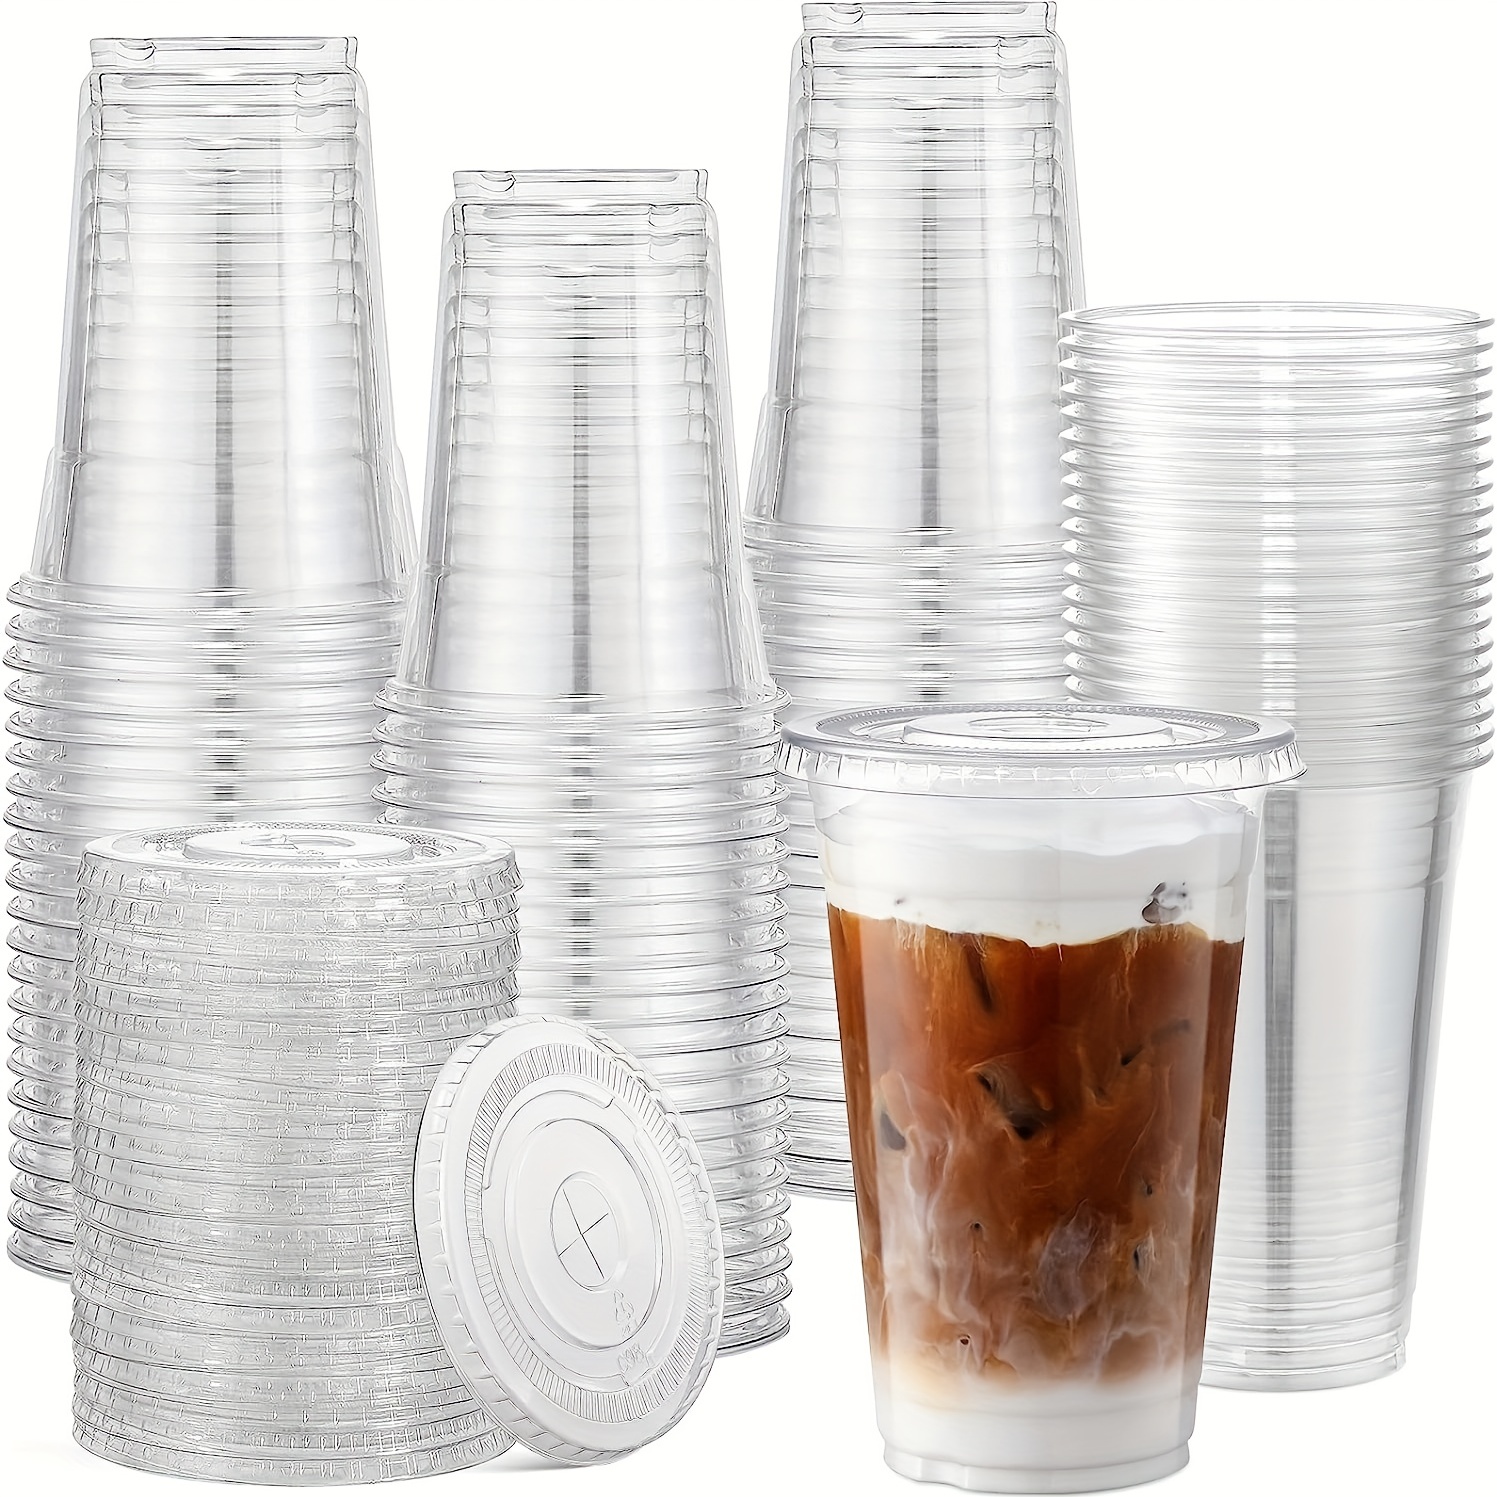 120 Pcs 5.5 oz Kids Plastic Cups Reusable Bulk Small Plastic Cups Reusable Toddler Cups Tumblers Kids Drinking Unbreakable Children Colorful Cups BPA